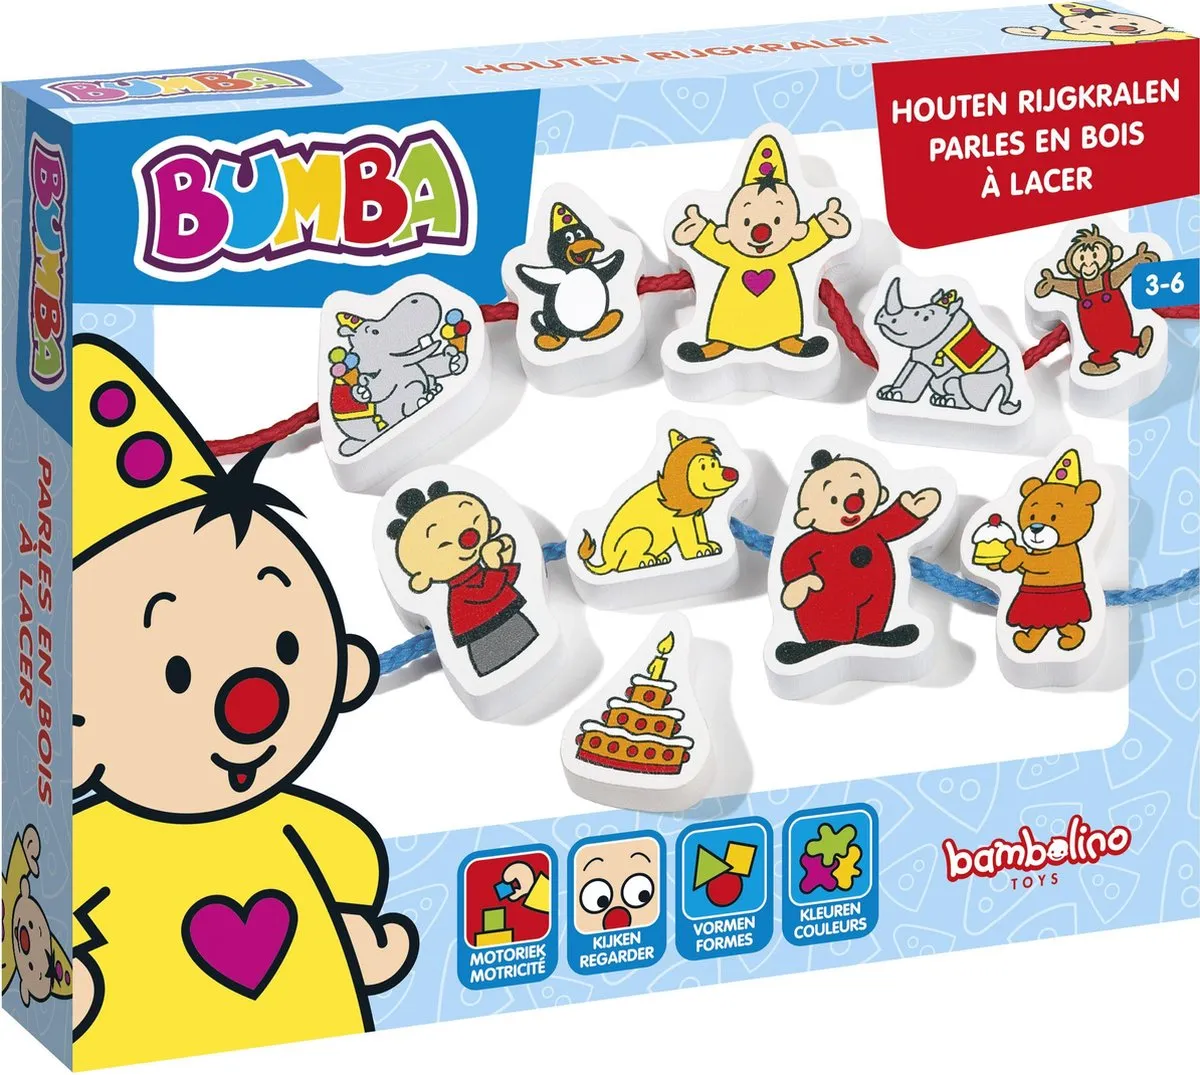 Bambolino Toys - Bumba houten rijgkralen - 12- delige set - educatief peuterspeelgoed - leer rijgen met Bumba de clown speelgoed